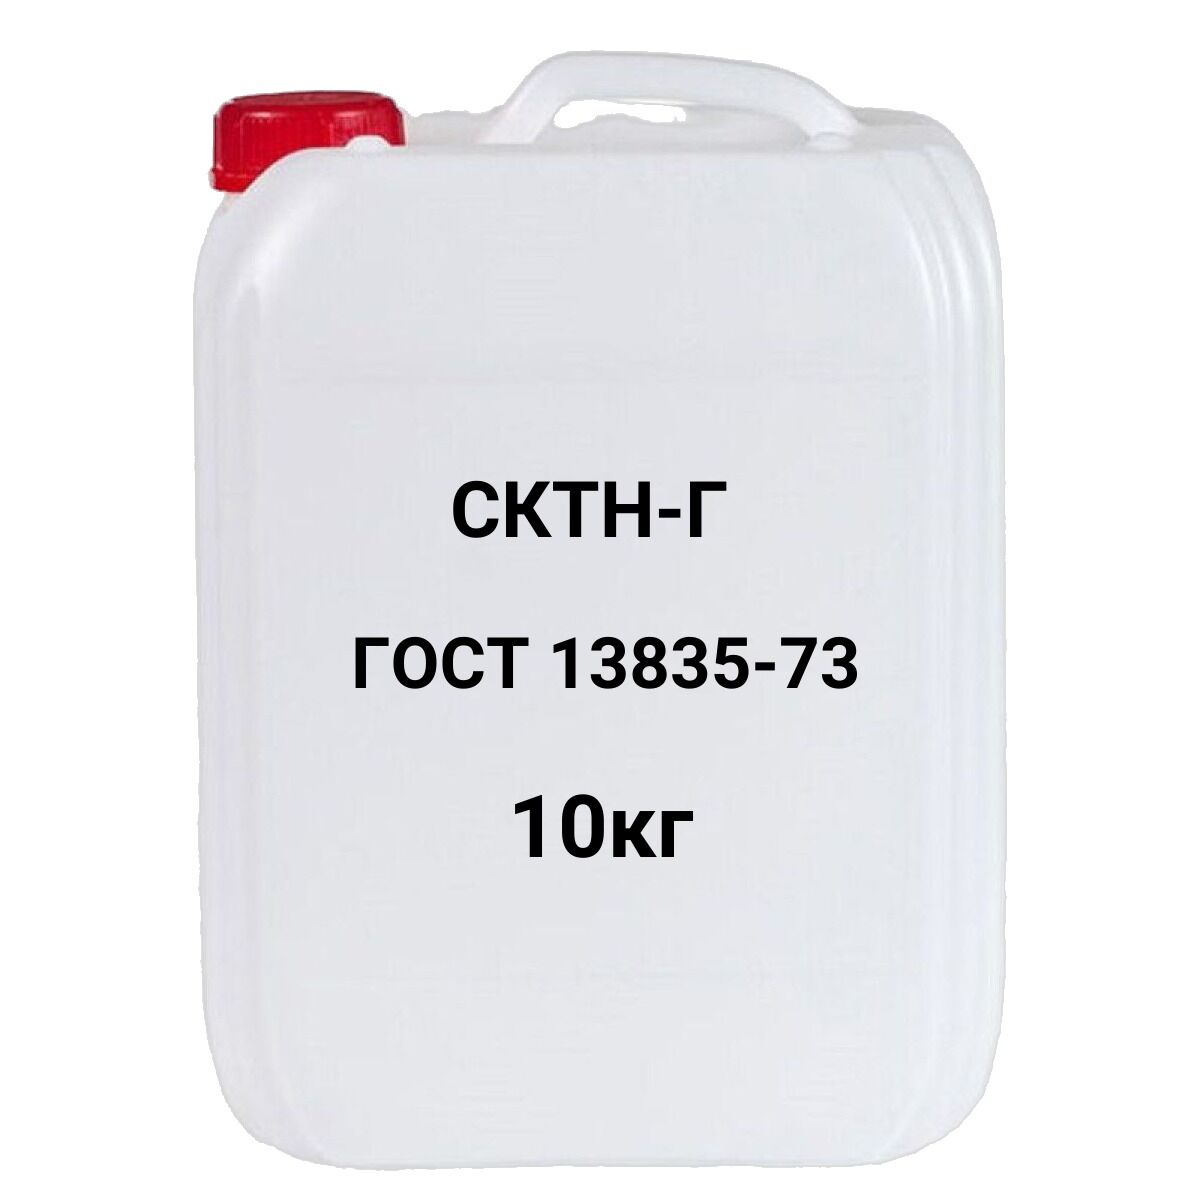 Каучук СКТН-Г синтетический термостойкий низкомолекулярный ГОСТ 13835-73